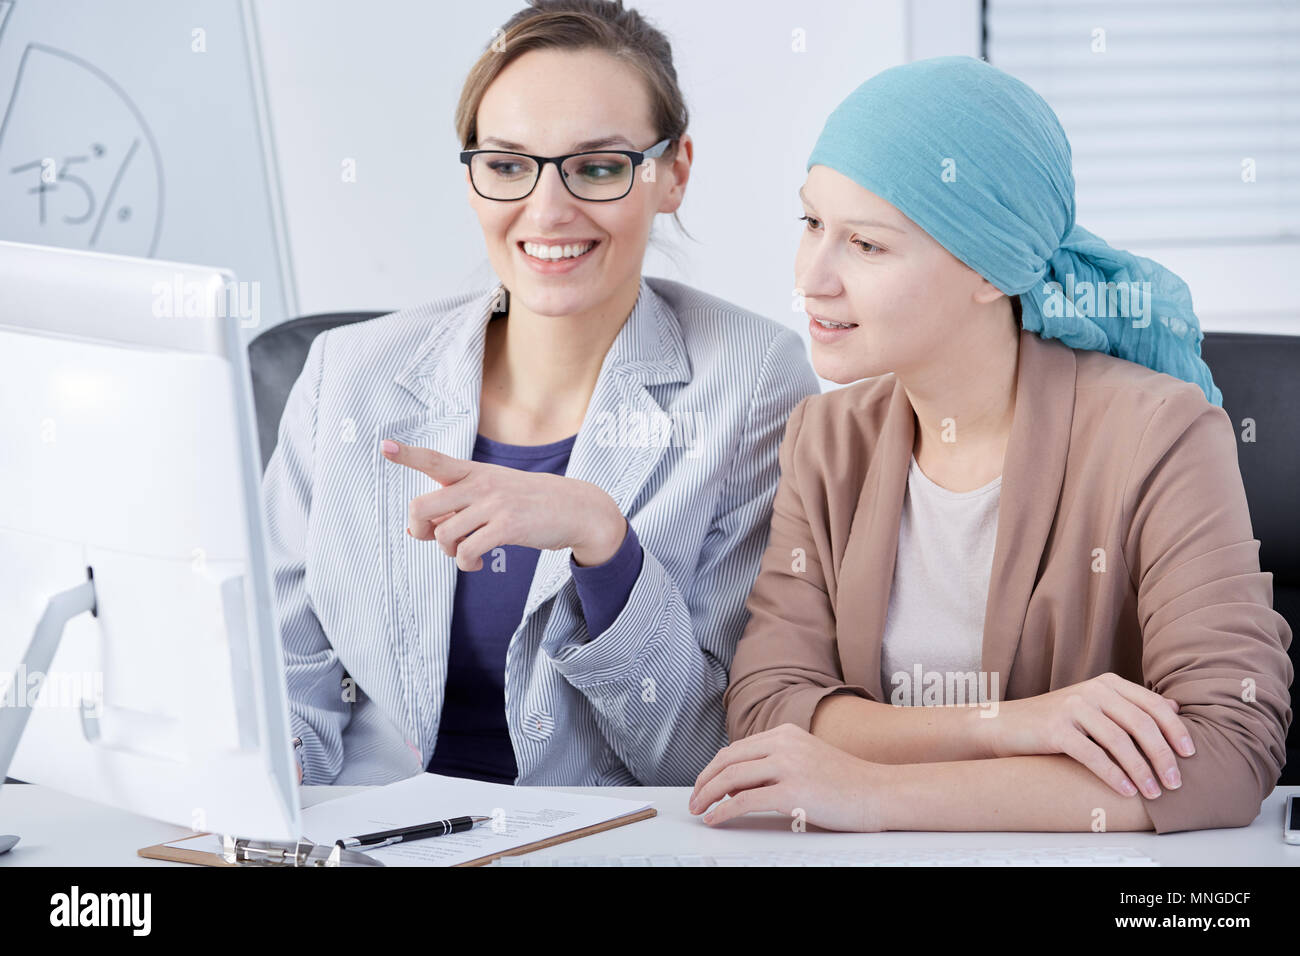 Weibliche Patienten arbeiten im Büro, im Gespräch mit Kollege Stockfoto